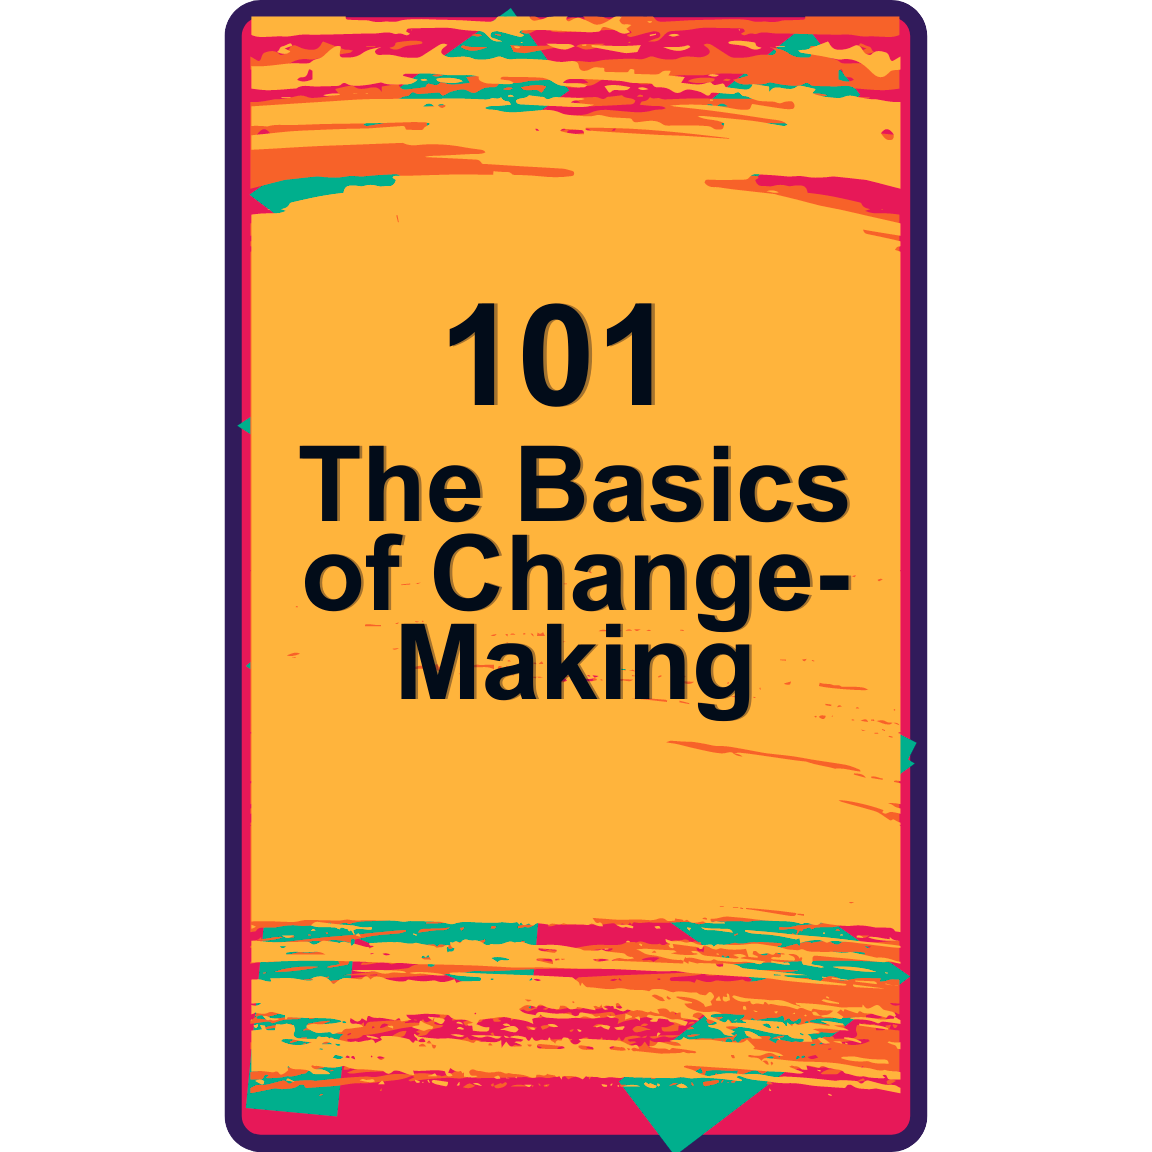 The Basics of Change-Making